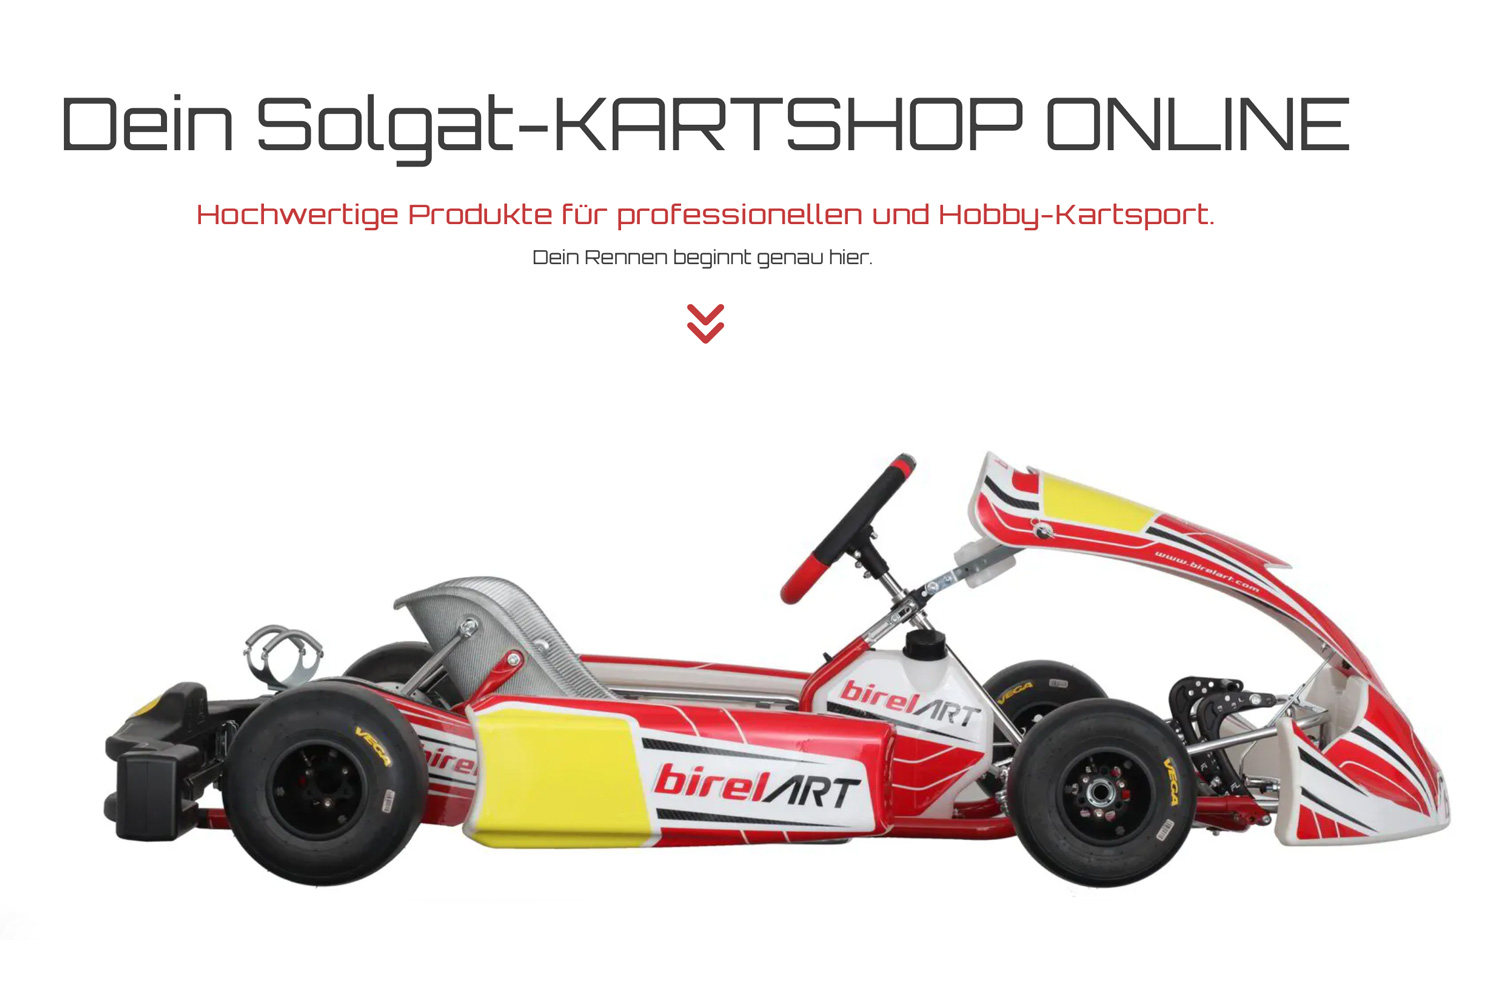 Solgat Motorsport präsentiert neuen Online-Shop